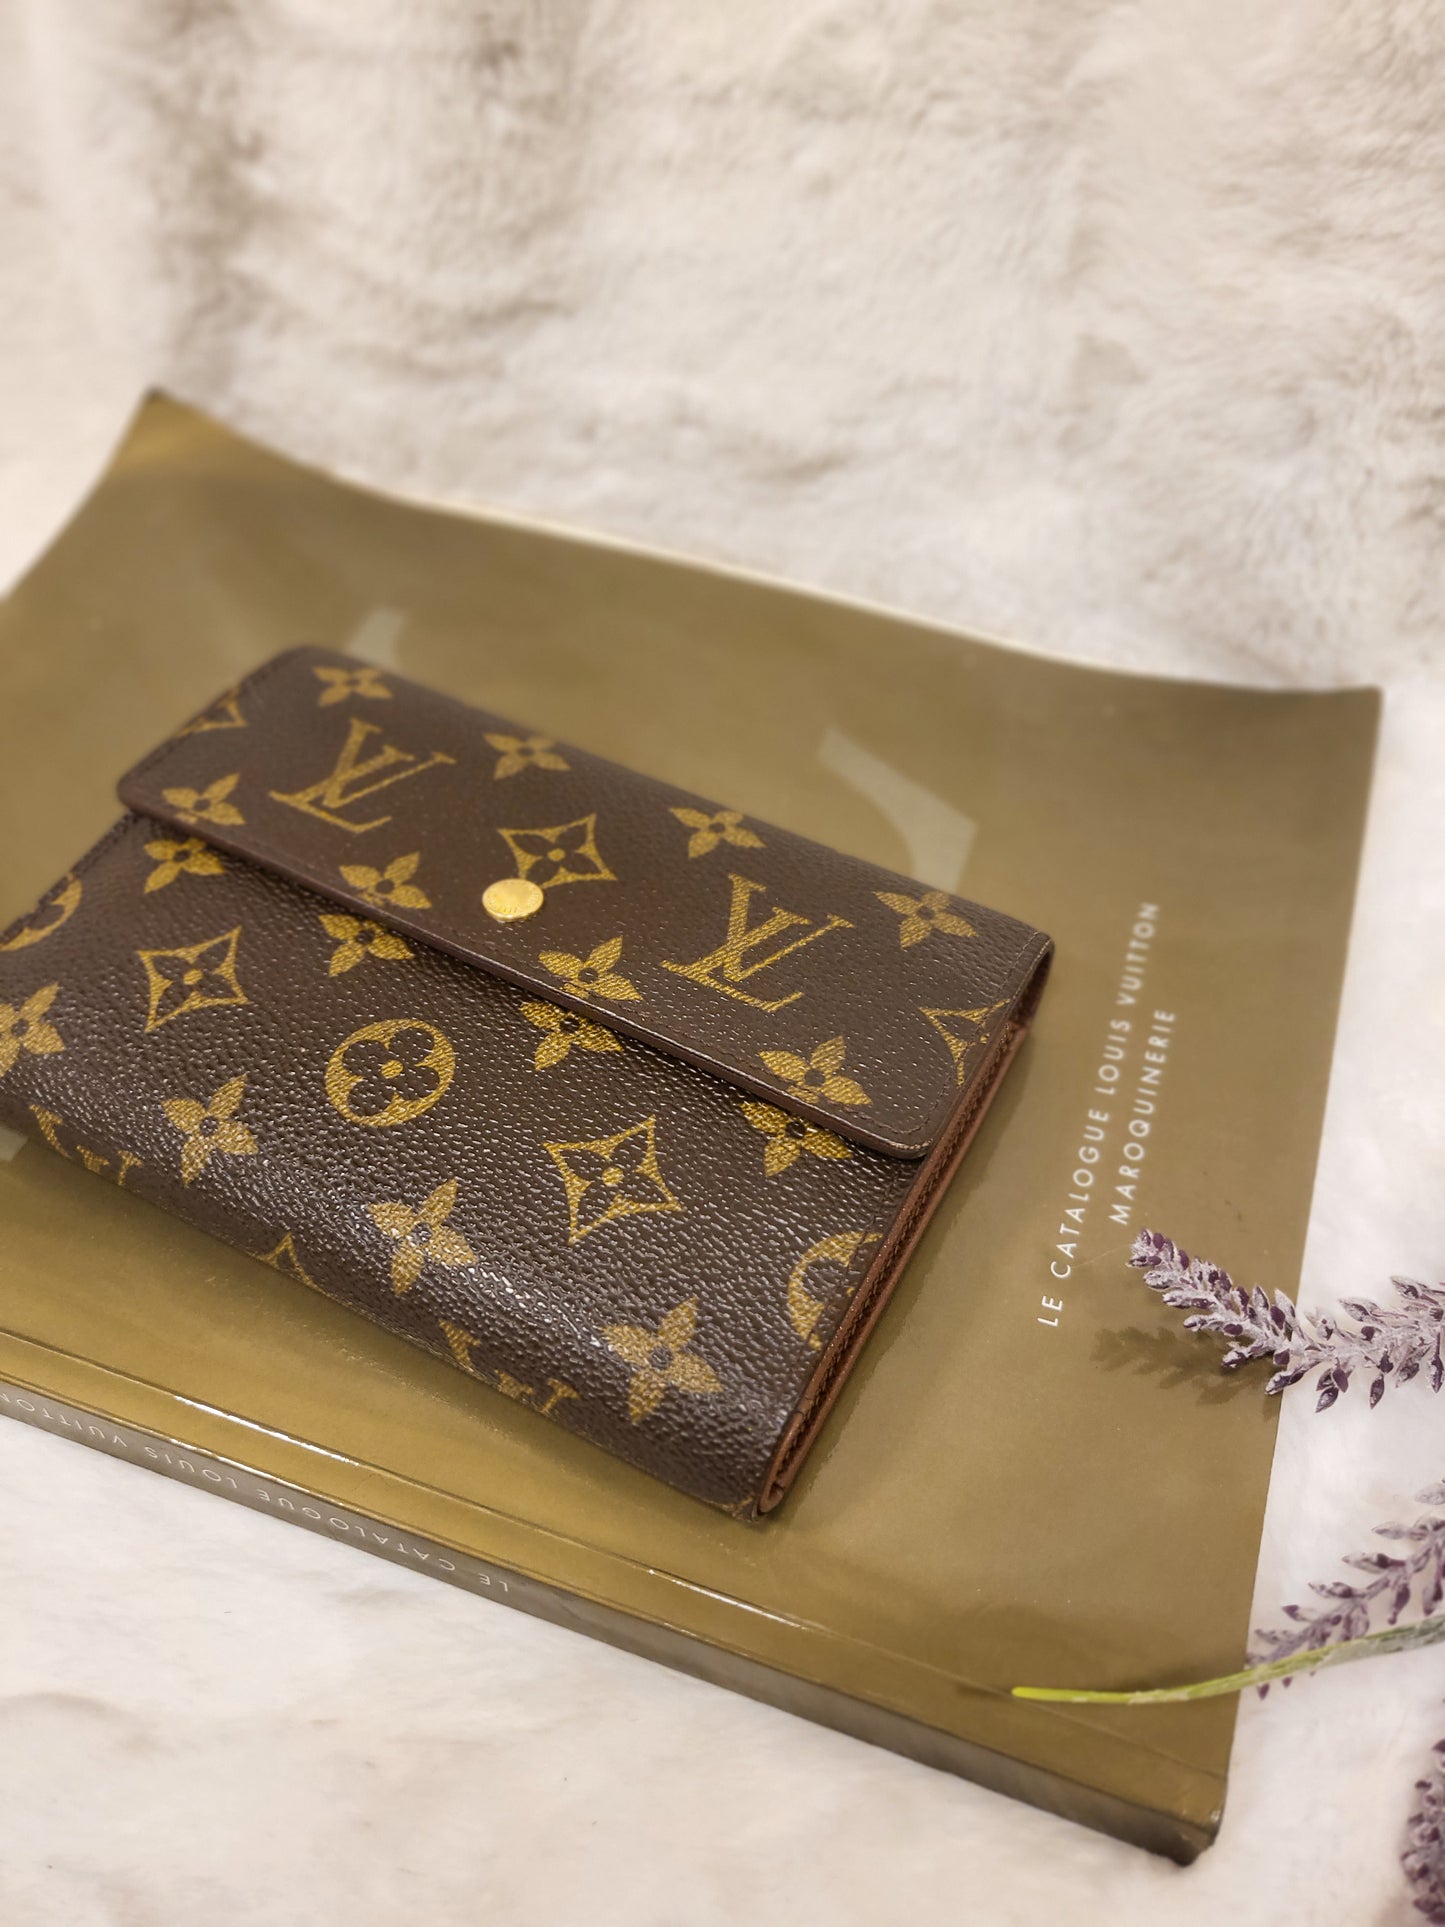 Authentic pre-owned porte tresor Papier Louis Vuitton trifold wallet